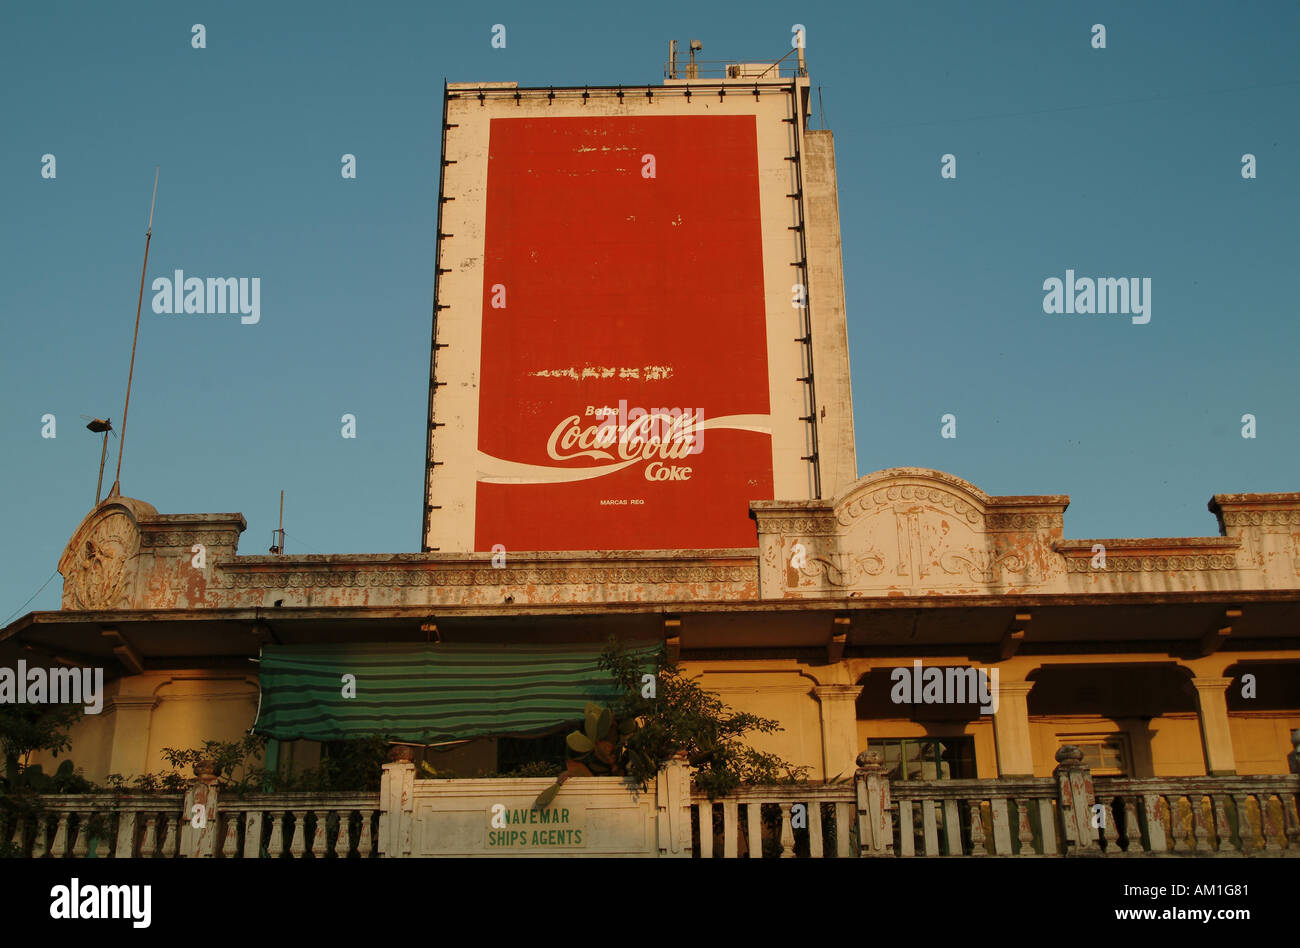 Neue und alte Kontrast von kolonialer Architektur und Globalisierung. Coca Cola Plakat erhebt sich über alte Gehäuse. Maputo, Mosambik Stockfoto